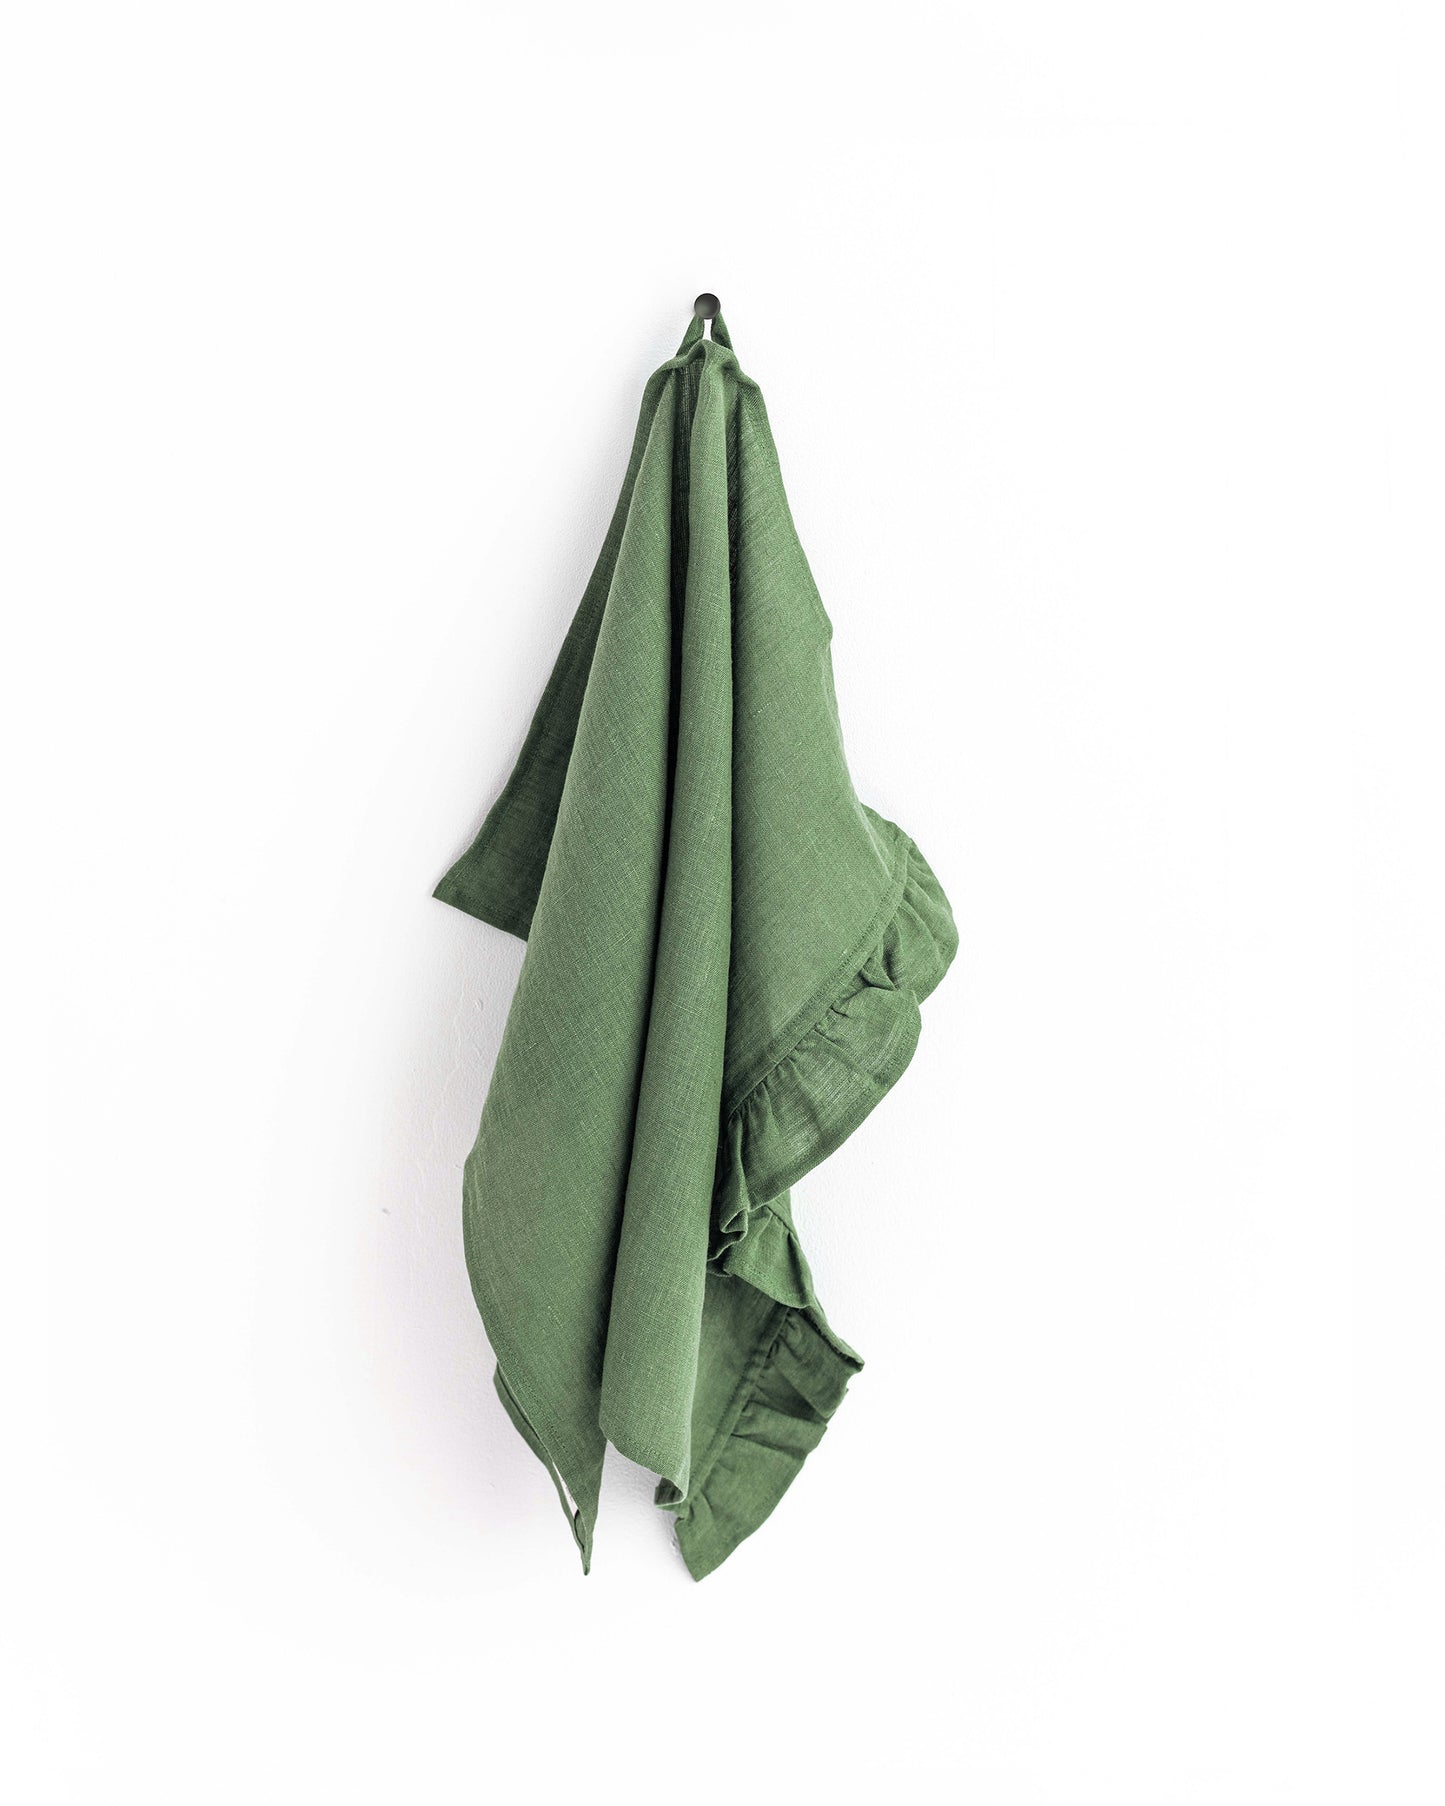 https://magiclinen.com/cdn/shop/products/ruffle-trim-linen-tea-towel-in-forest-green-1.jpg?v=1675964050&width=1445